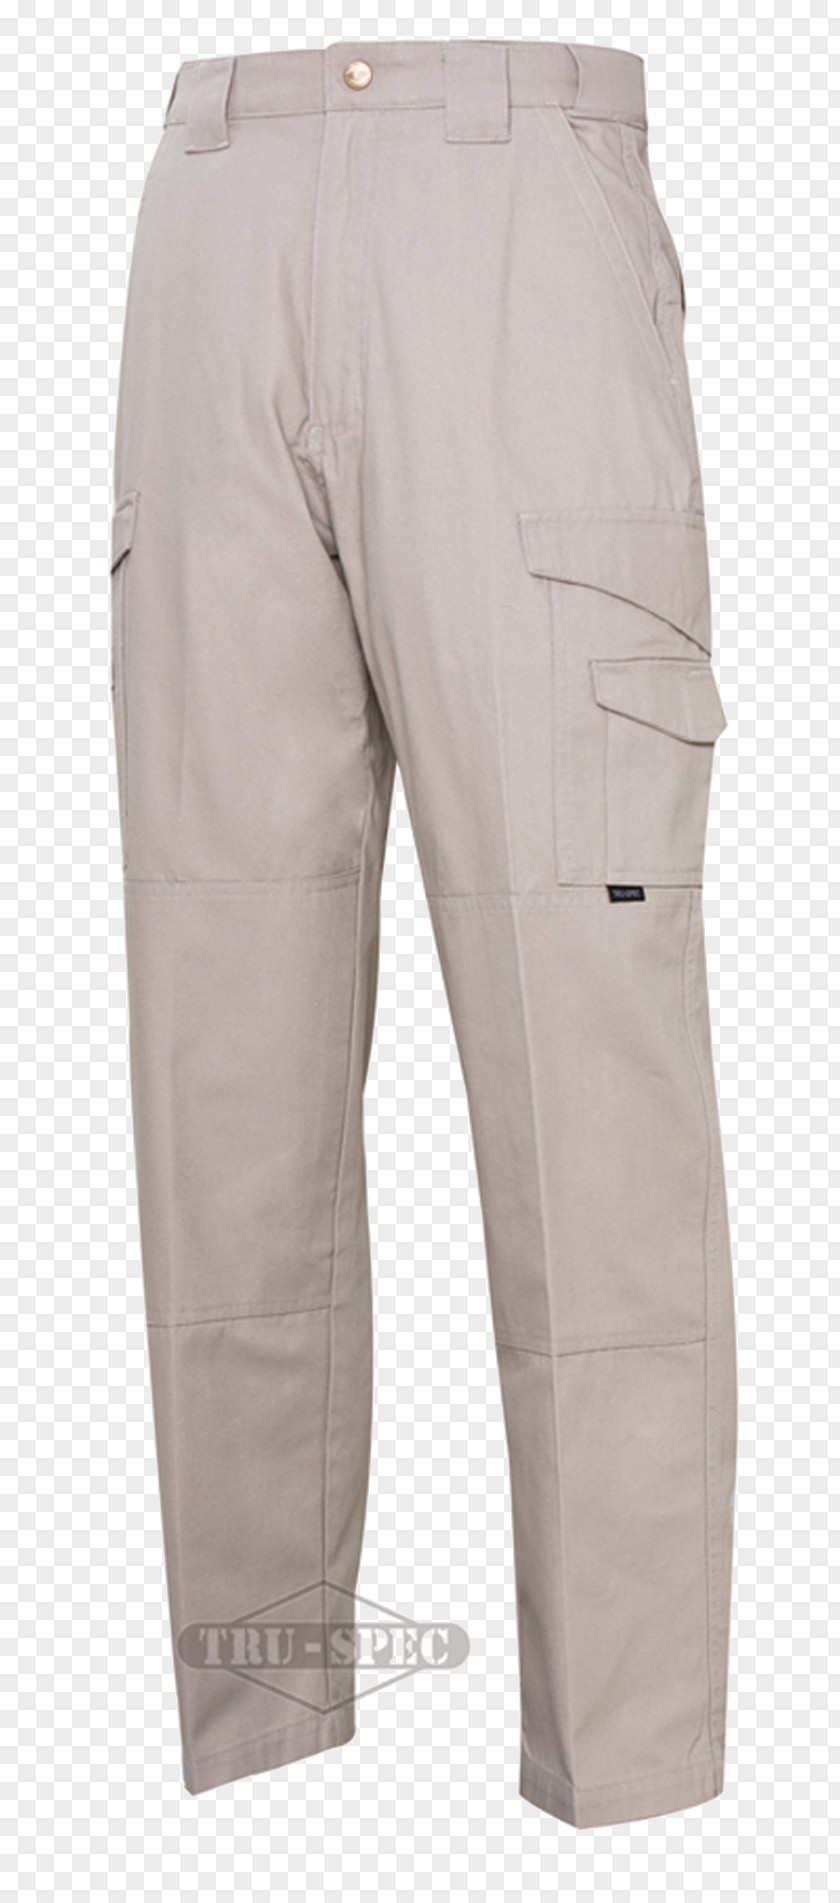 TRU-SPEC Tactical Pants Clothing Military Tactics PNG